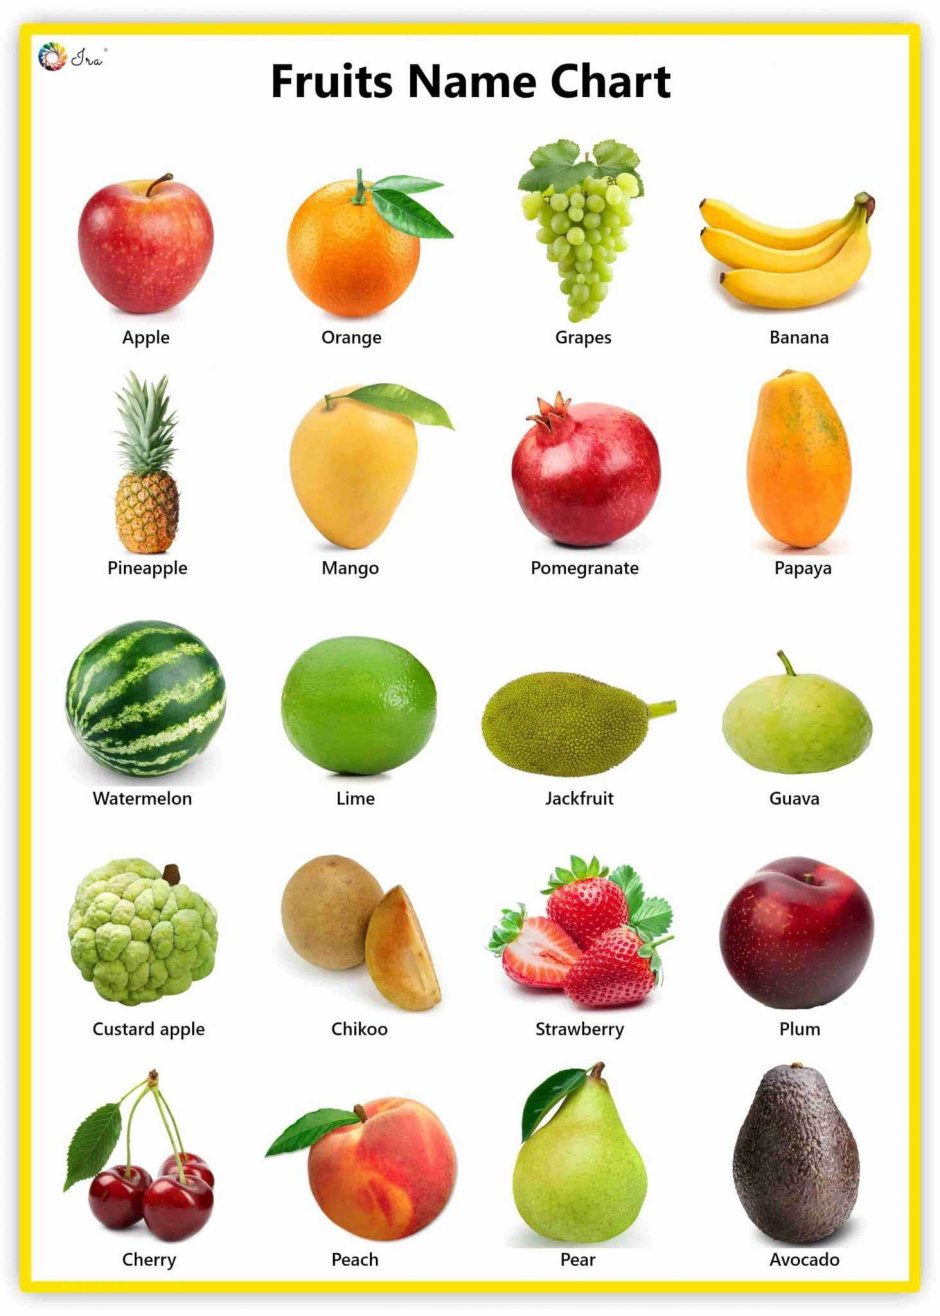 Название всех фруктов